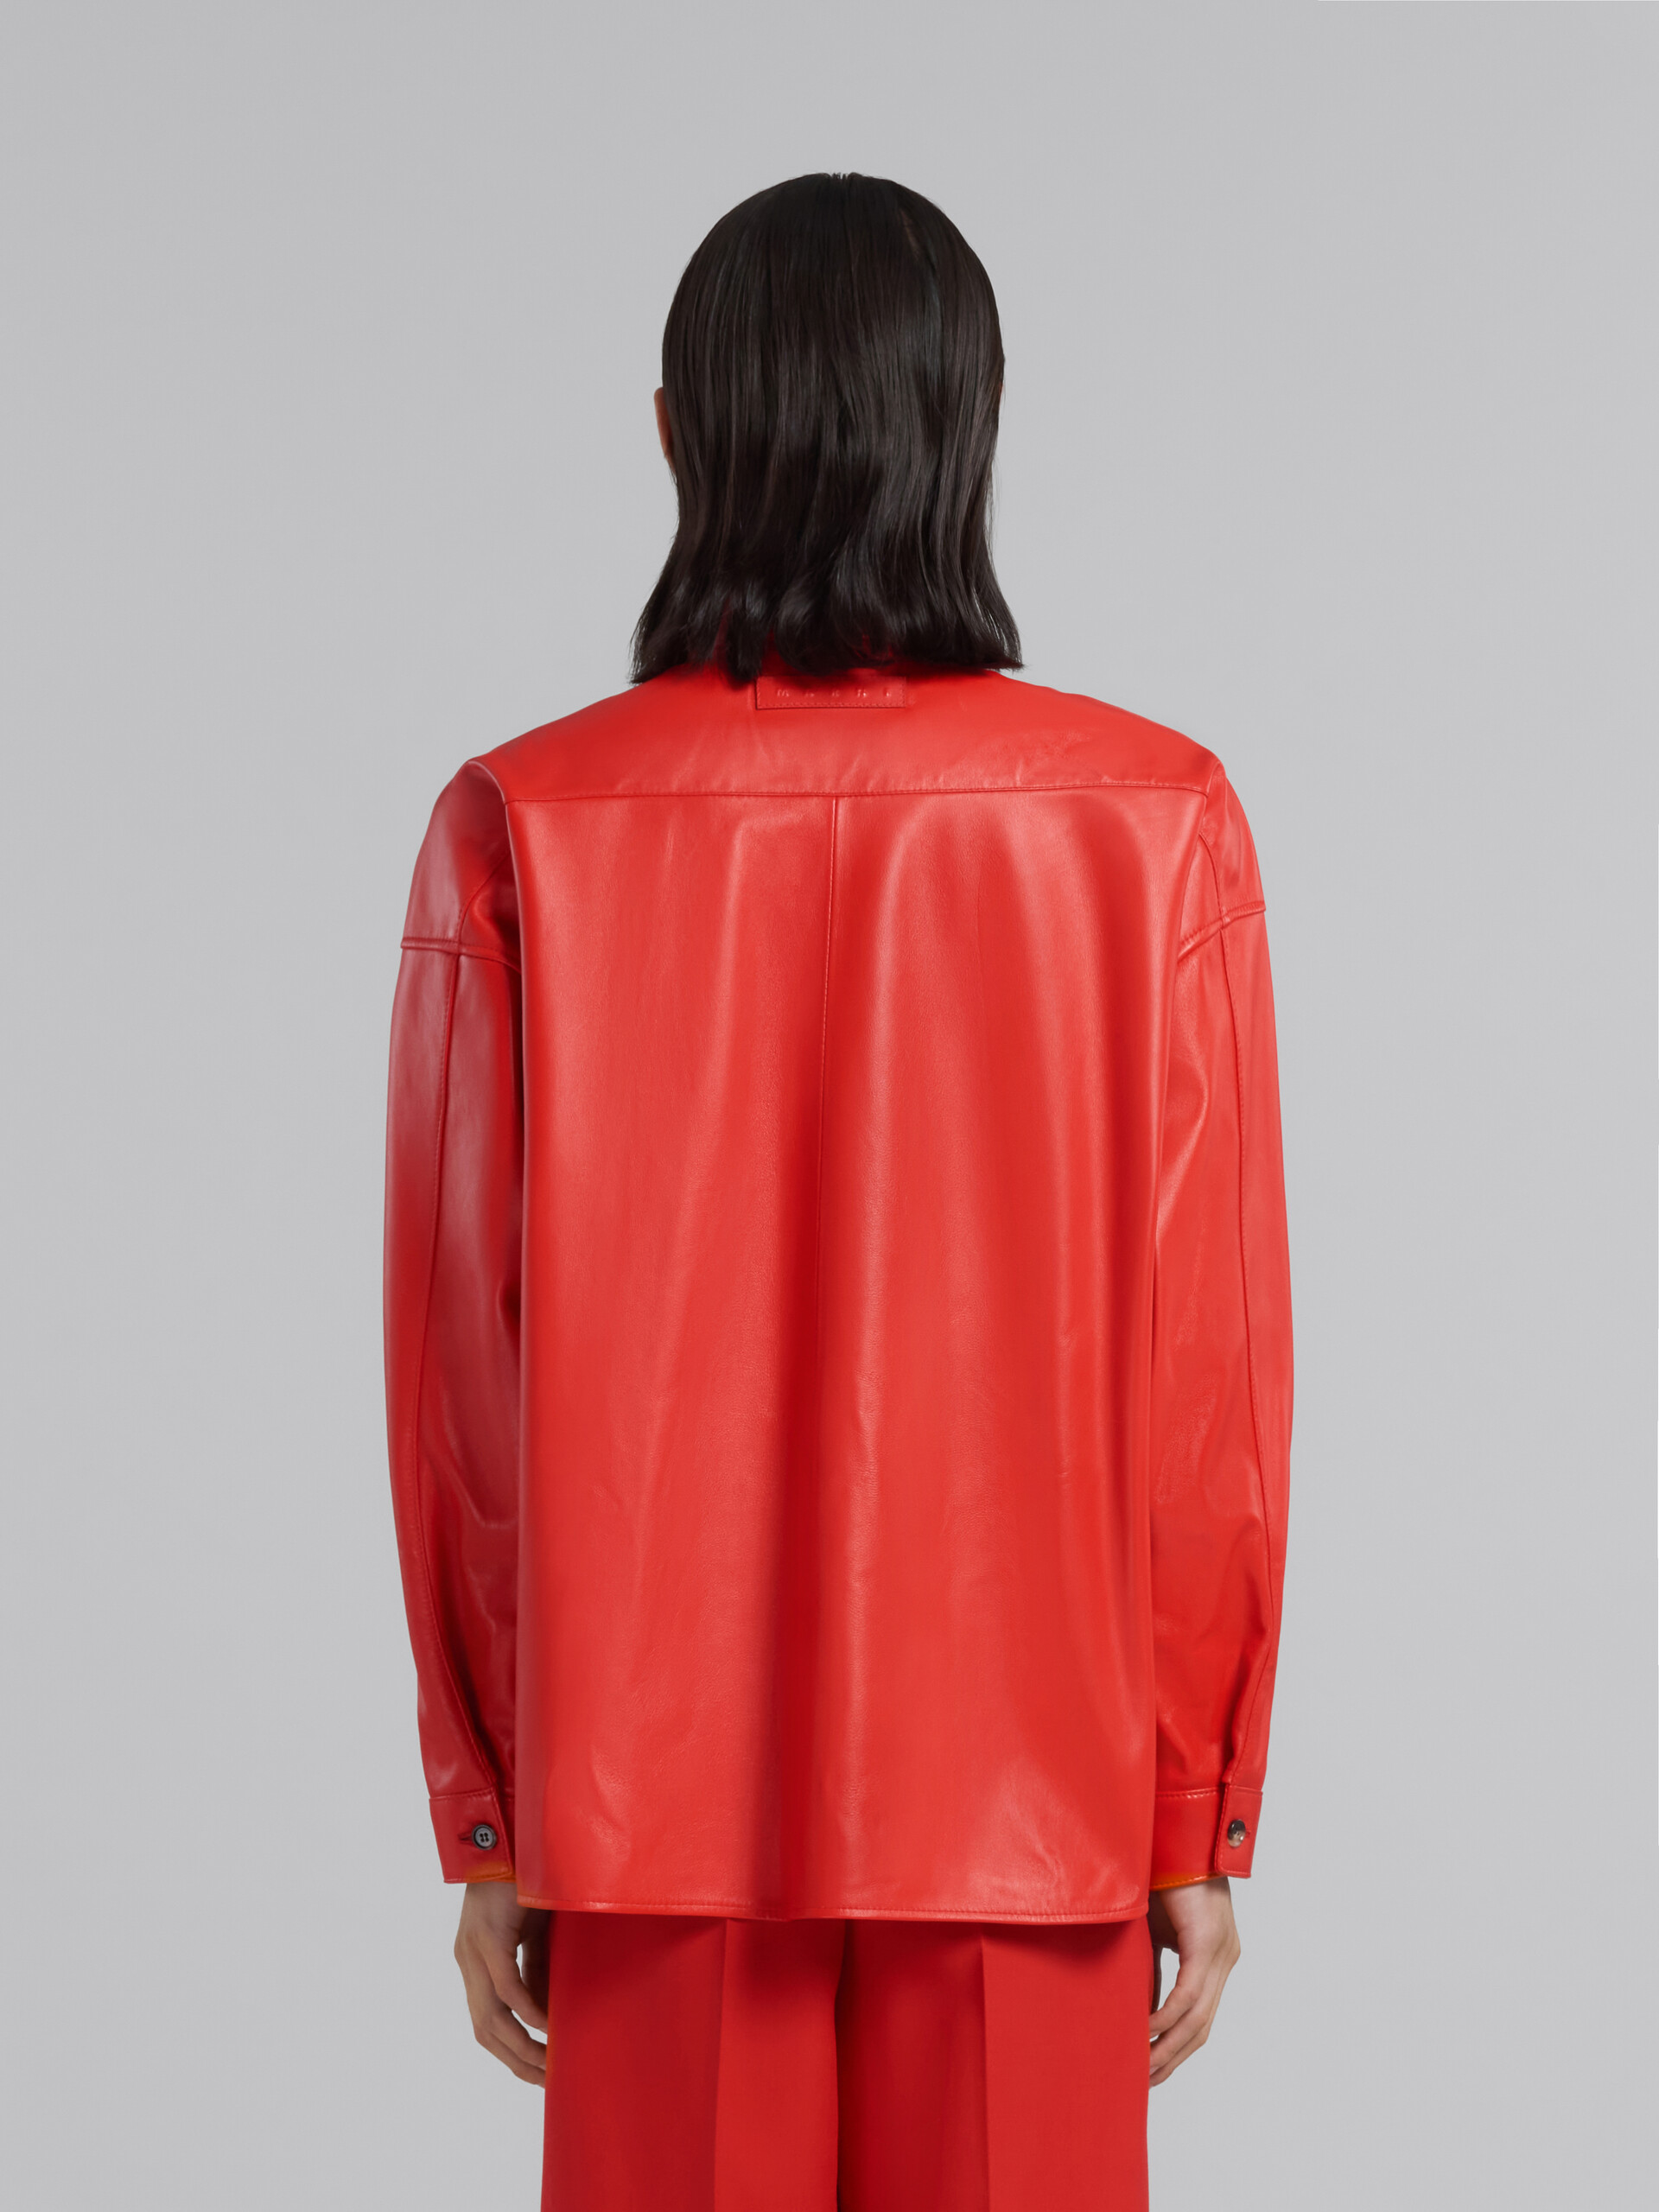 Camicia in nappa rossa - Camicie - Image 3